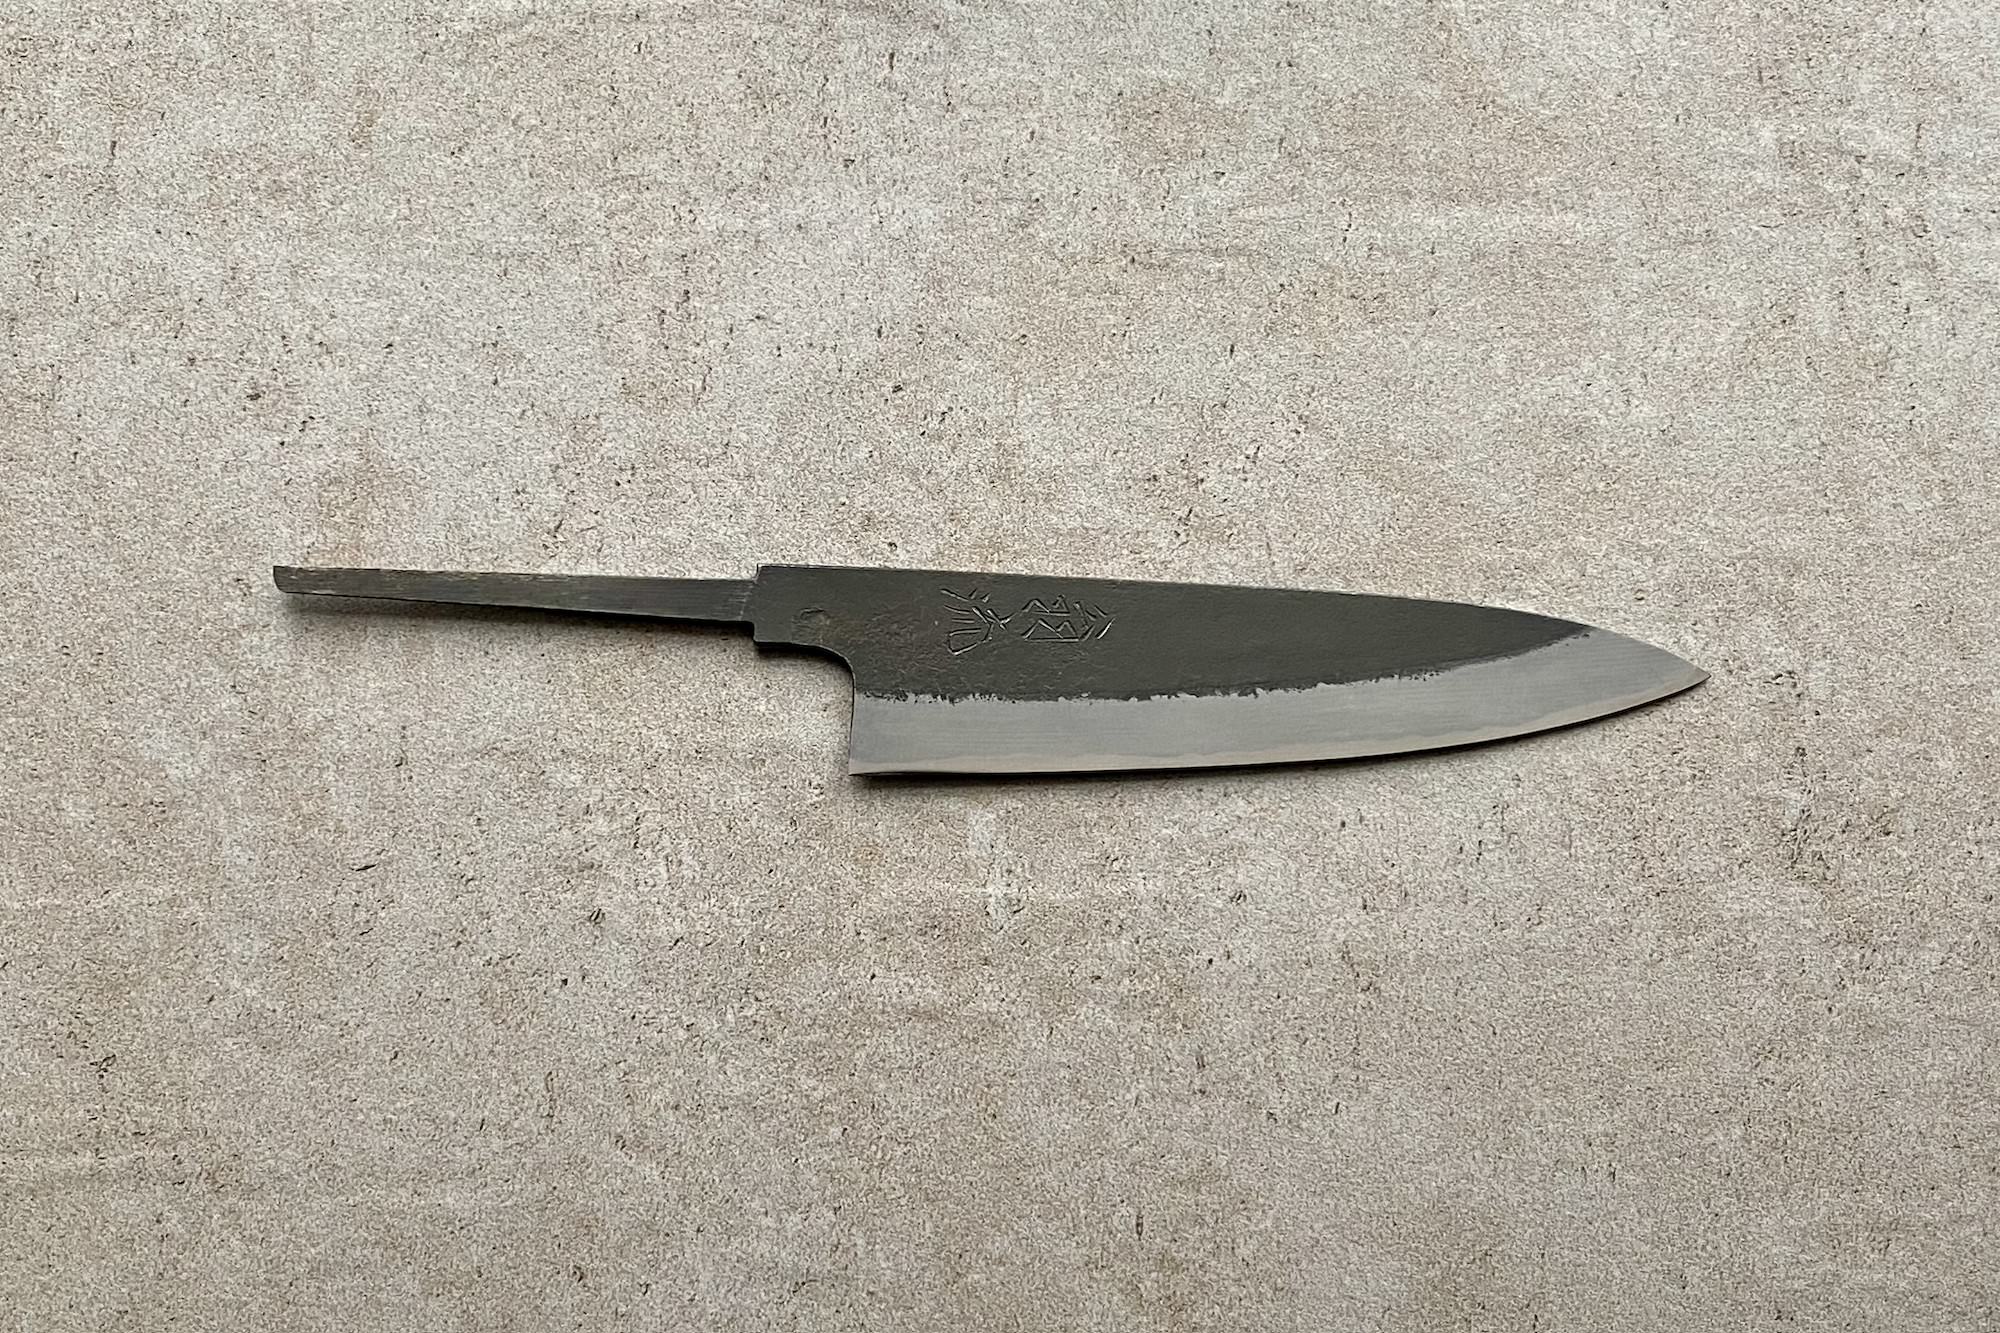 Hinoura Shirogami2 Kurouchi 135mm Blade - Japanese kitchen knife